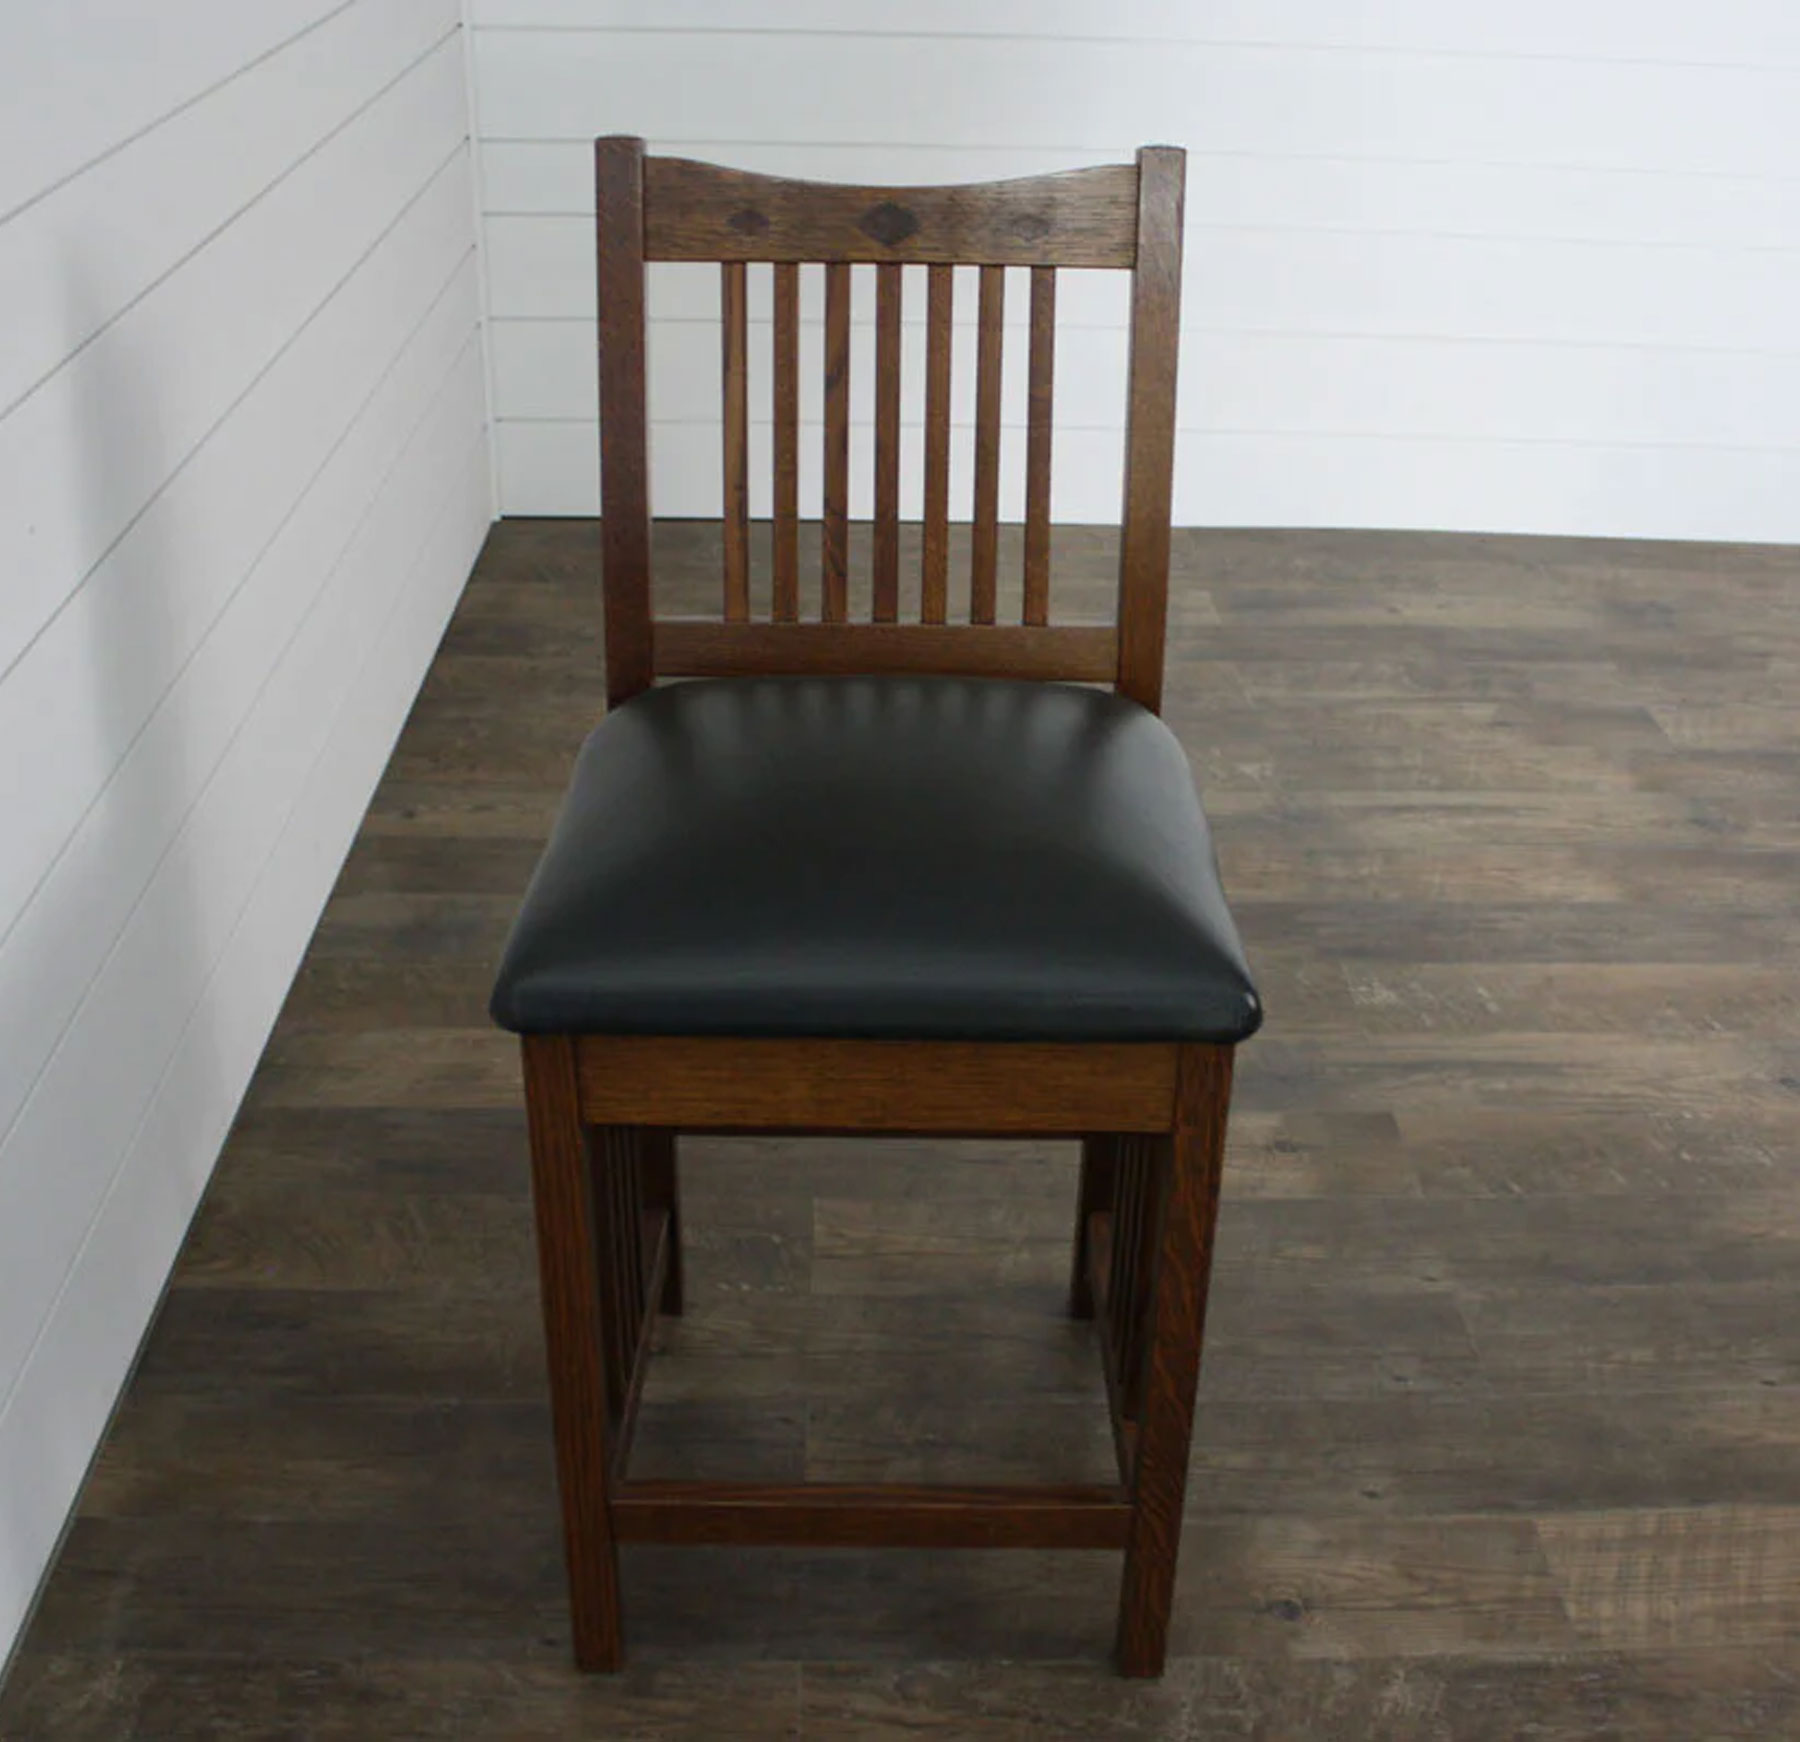 Classic 24 Inch Bar Chair in Rustic Quartersawn White Oak